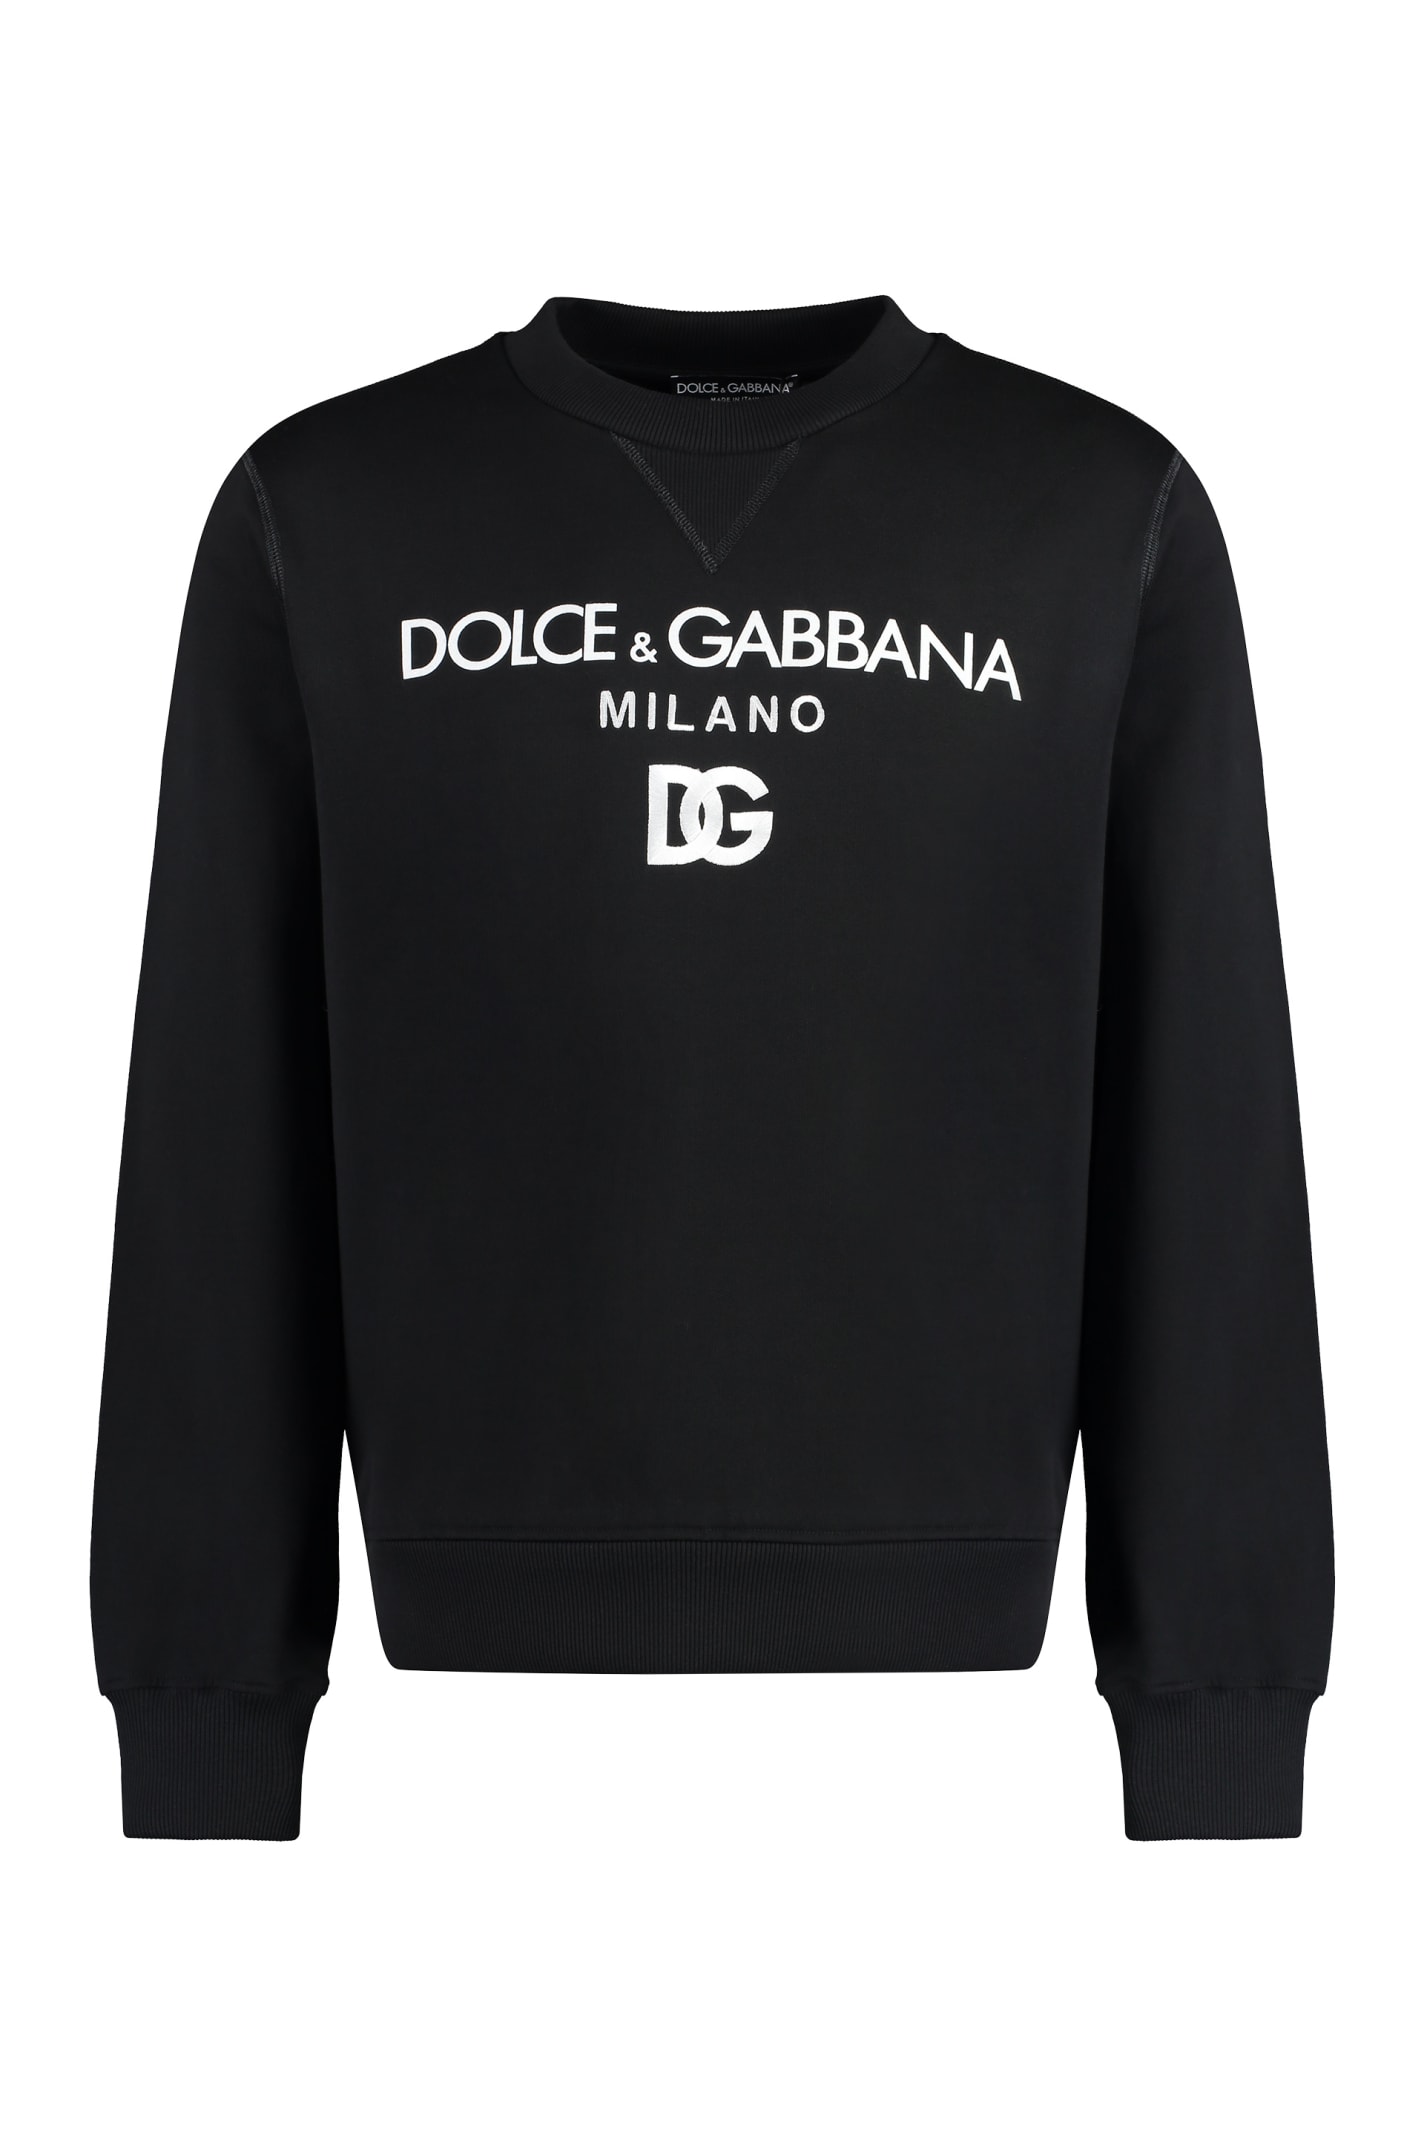 Dolce & Gabbana Cotton Crew-neck Sweatshirt In Black